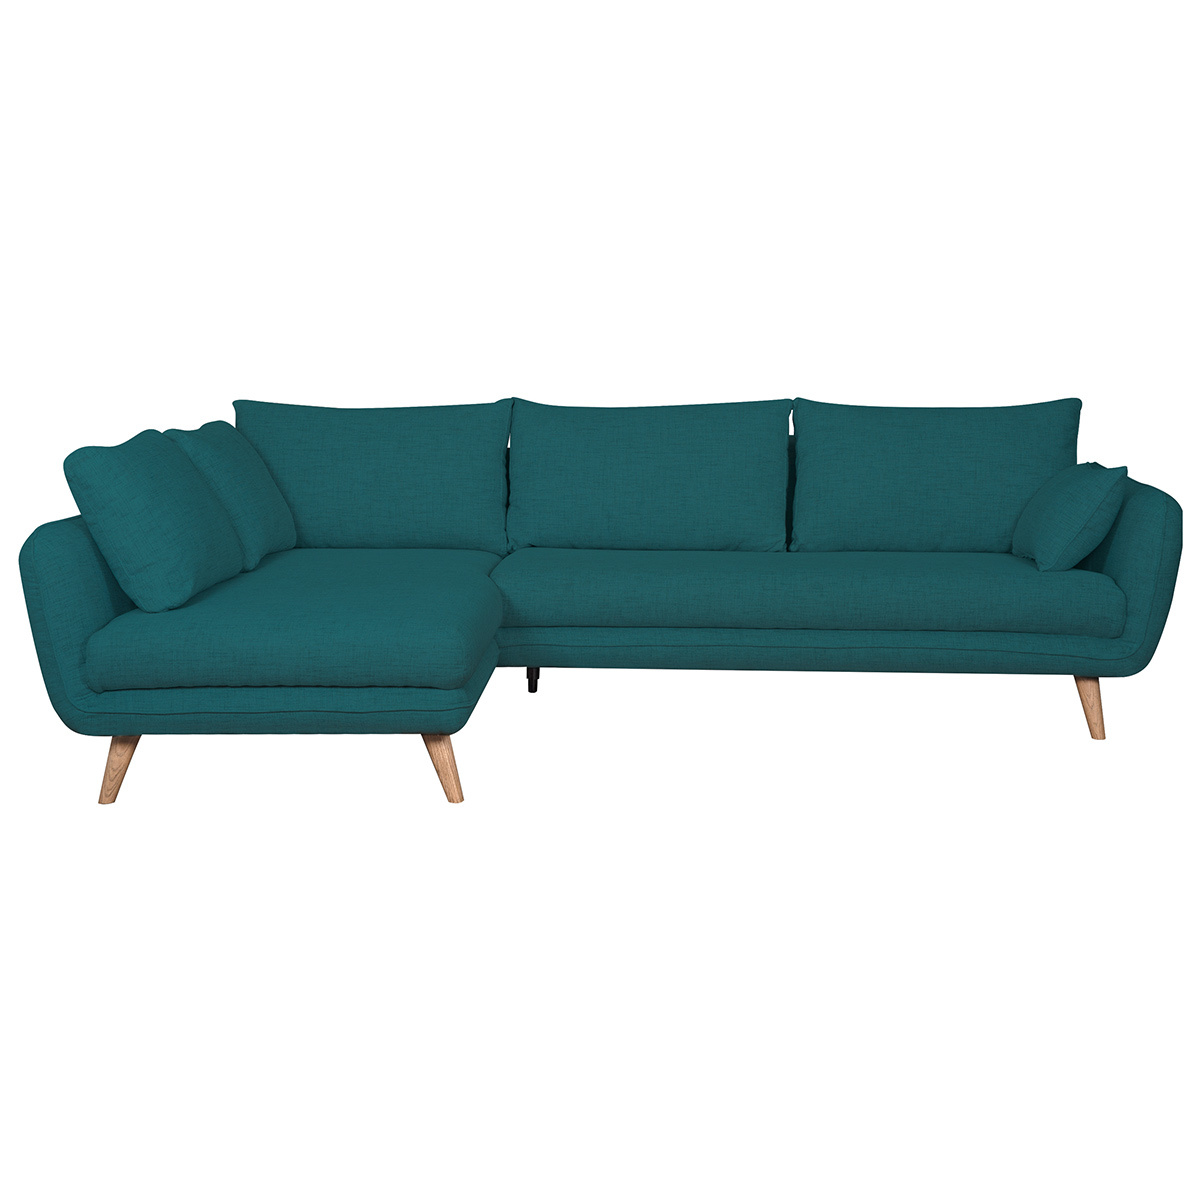 Canapé d'angle gauche scandinave 5 places en tissu bleu paon et bois clair CREEP vue1